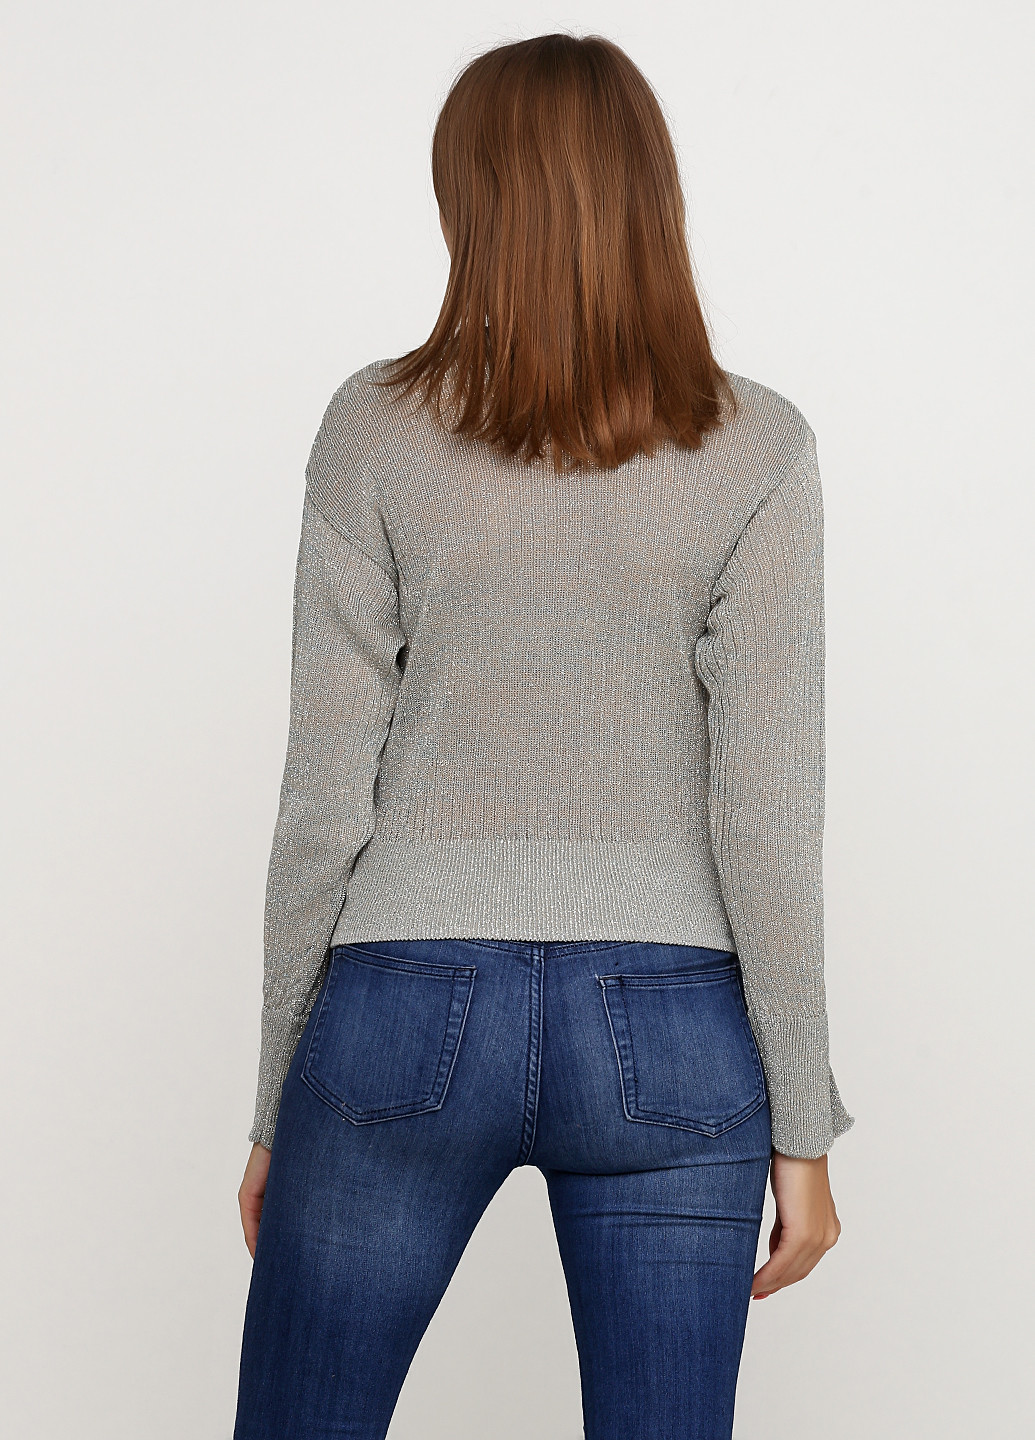 Оливковый демисезонный пуловер пуловер H&M